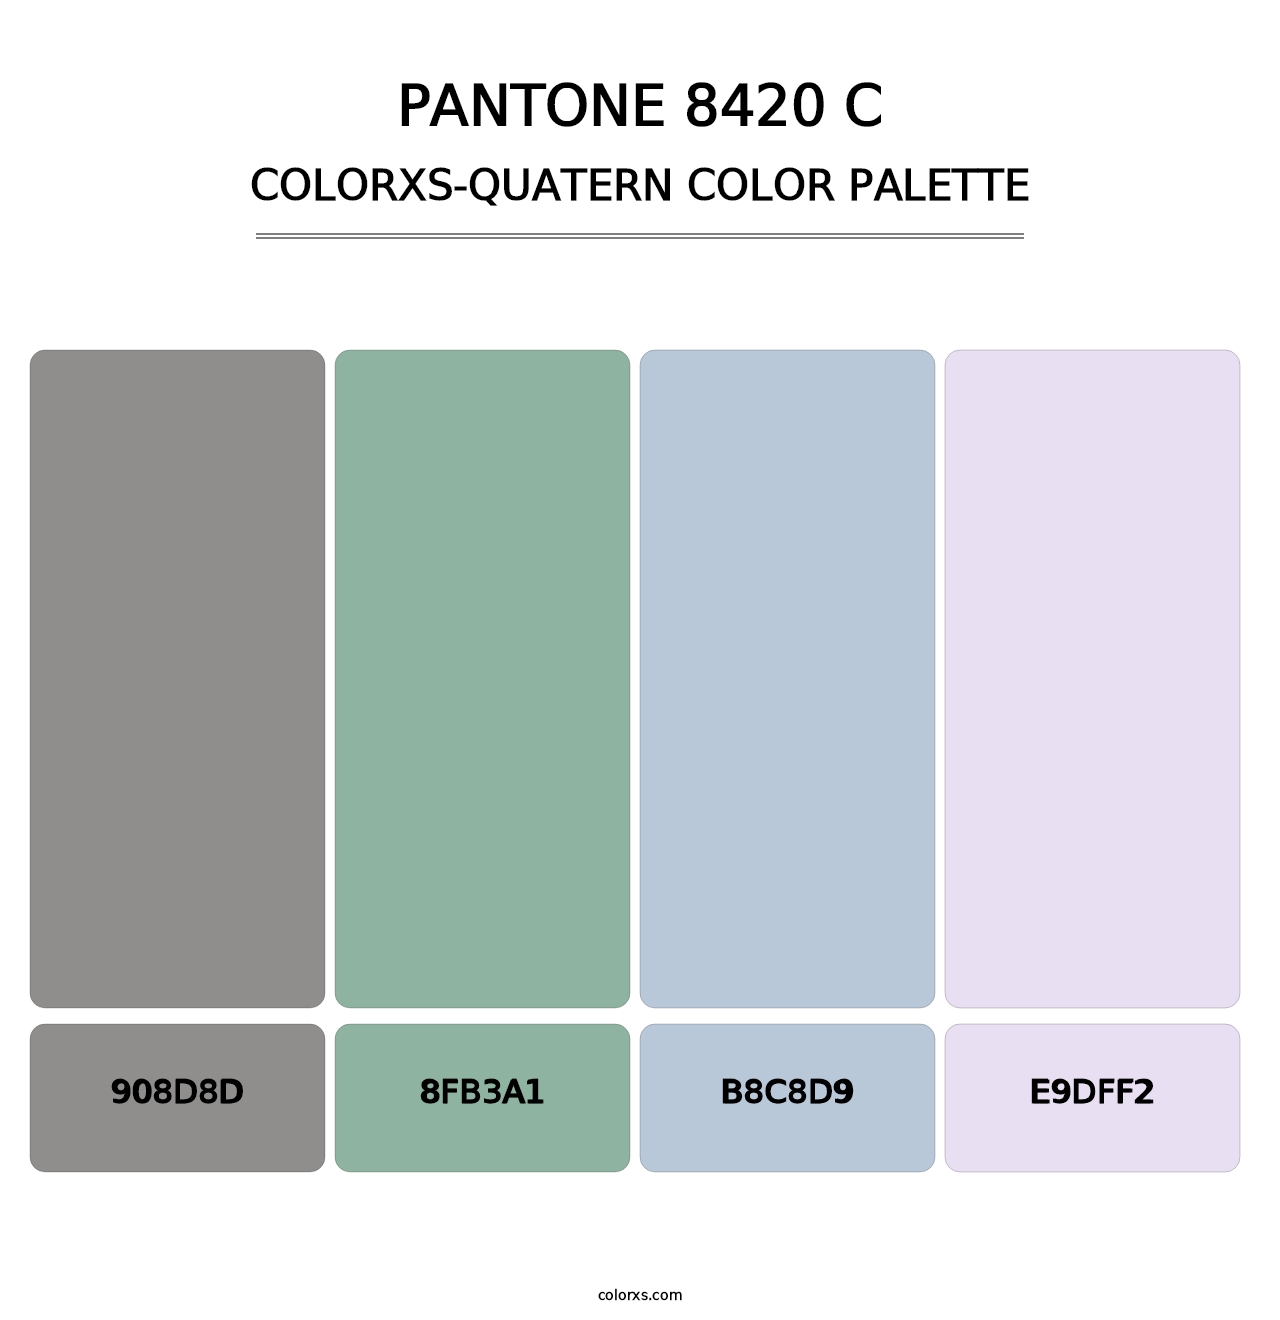 PANTONE 8420 C - Colorxs Quatern Palette